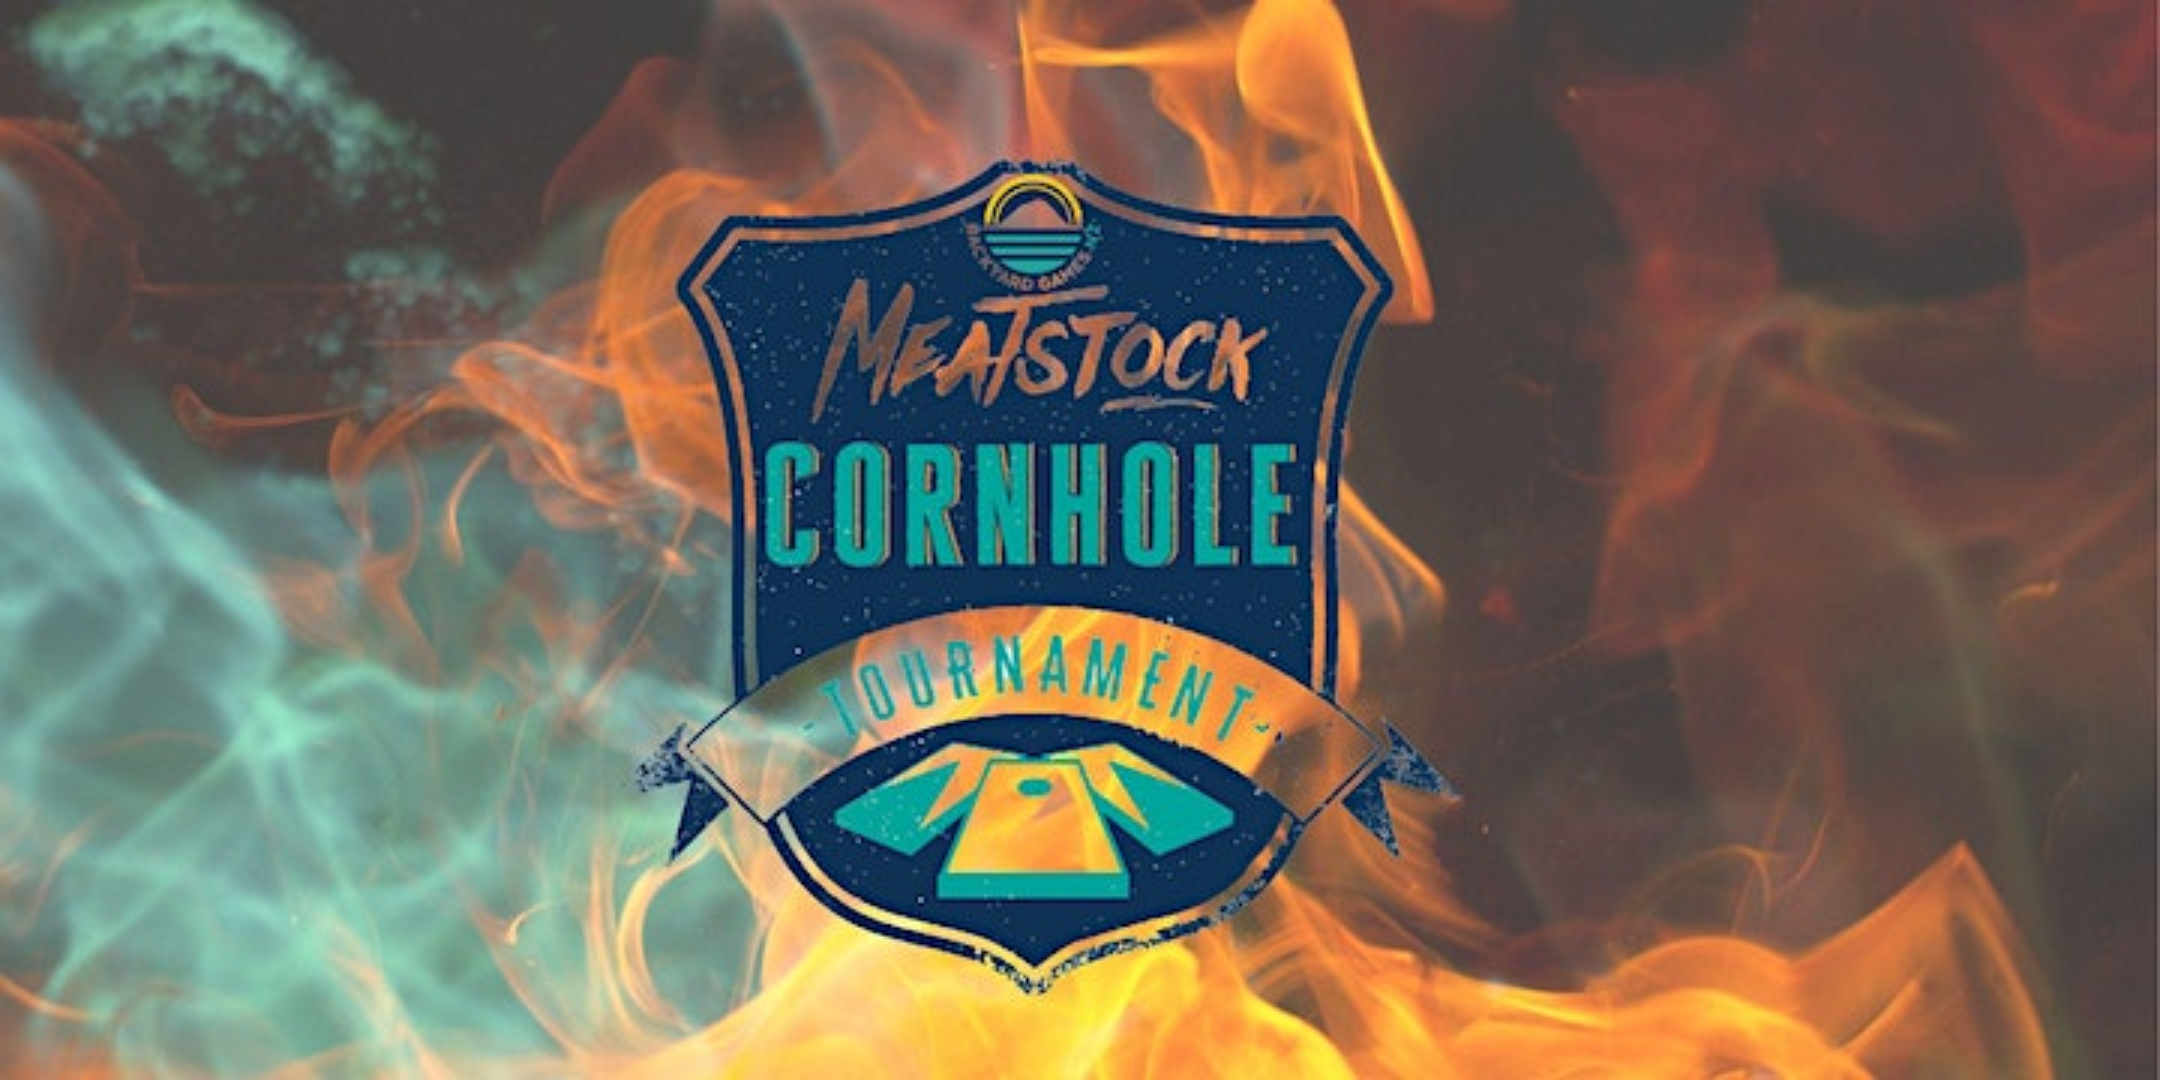 meatstock cornhole open logo